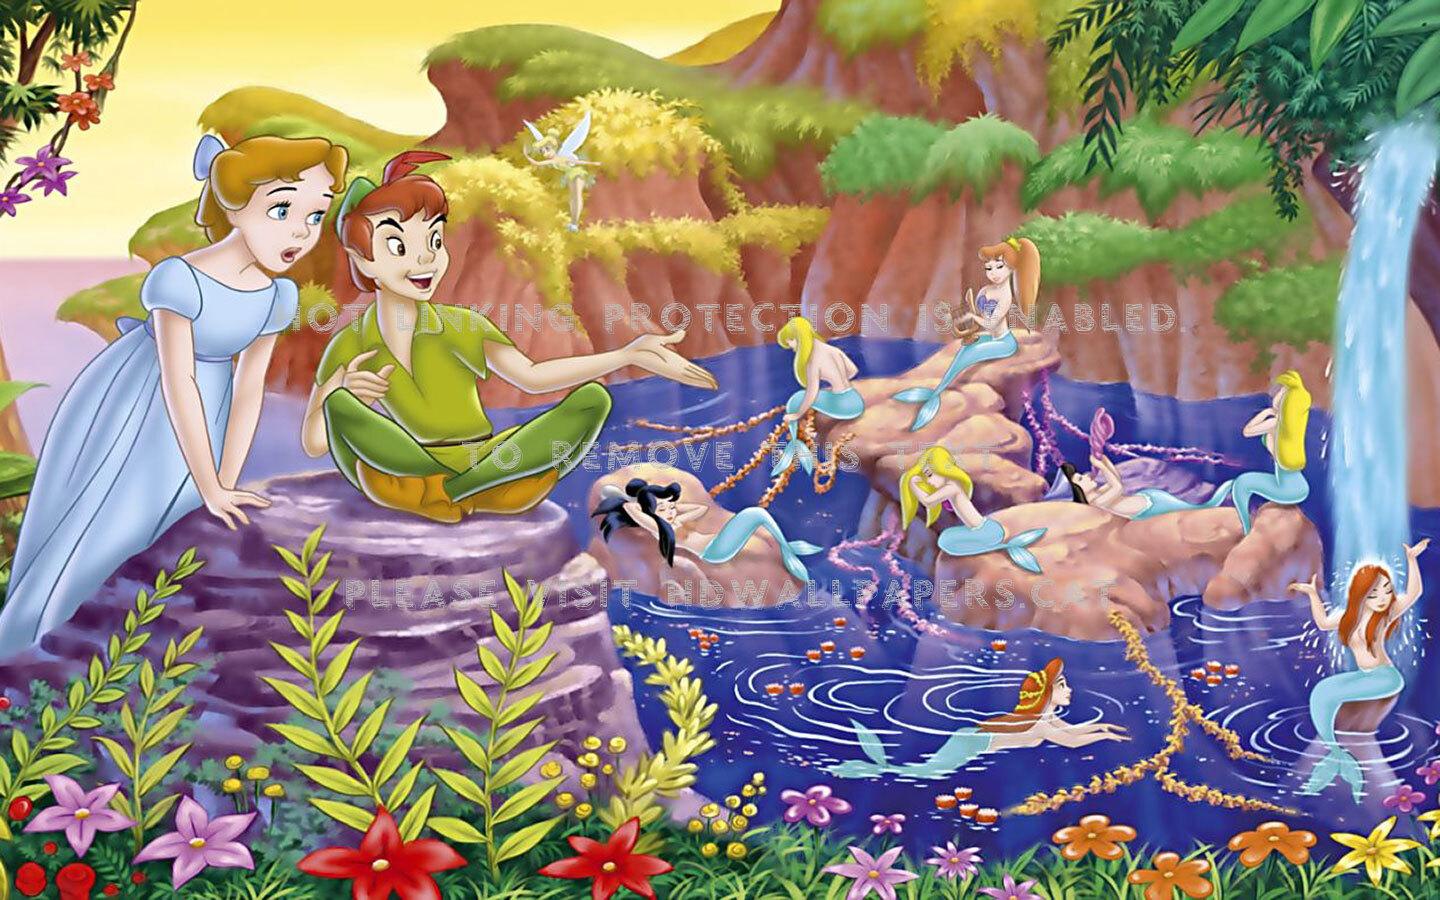 peter pan wendy disney cartoon mermaids